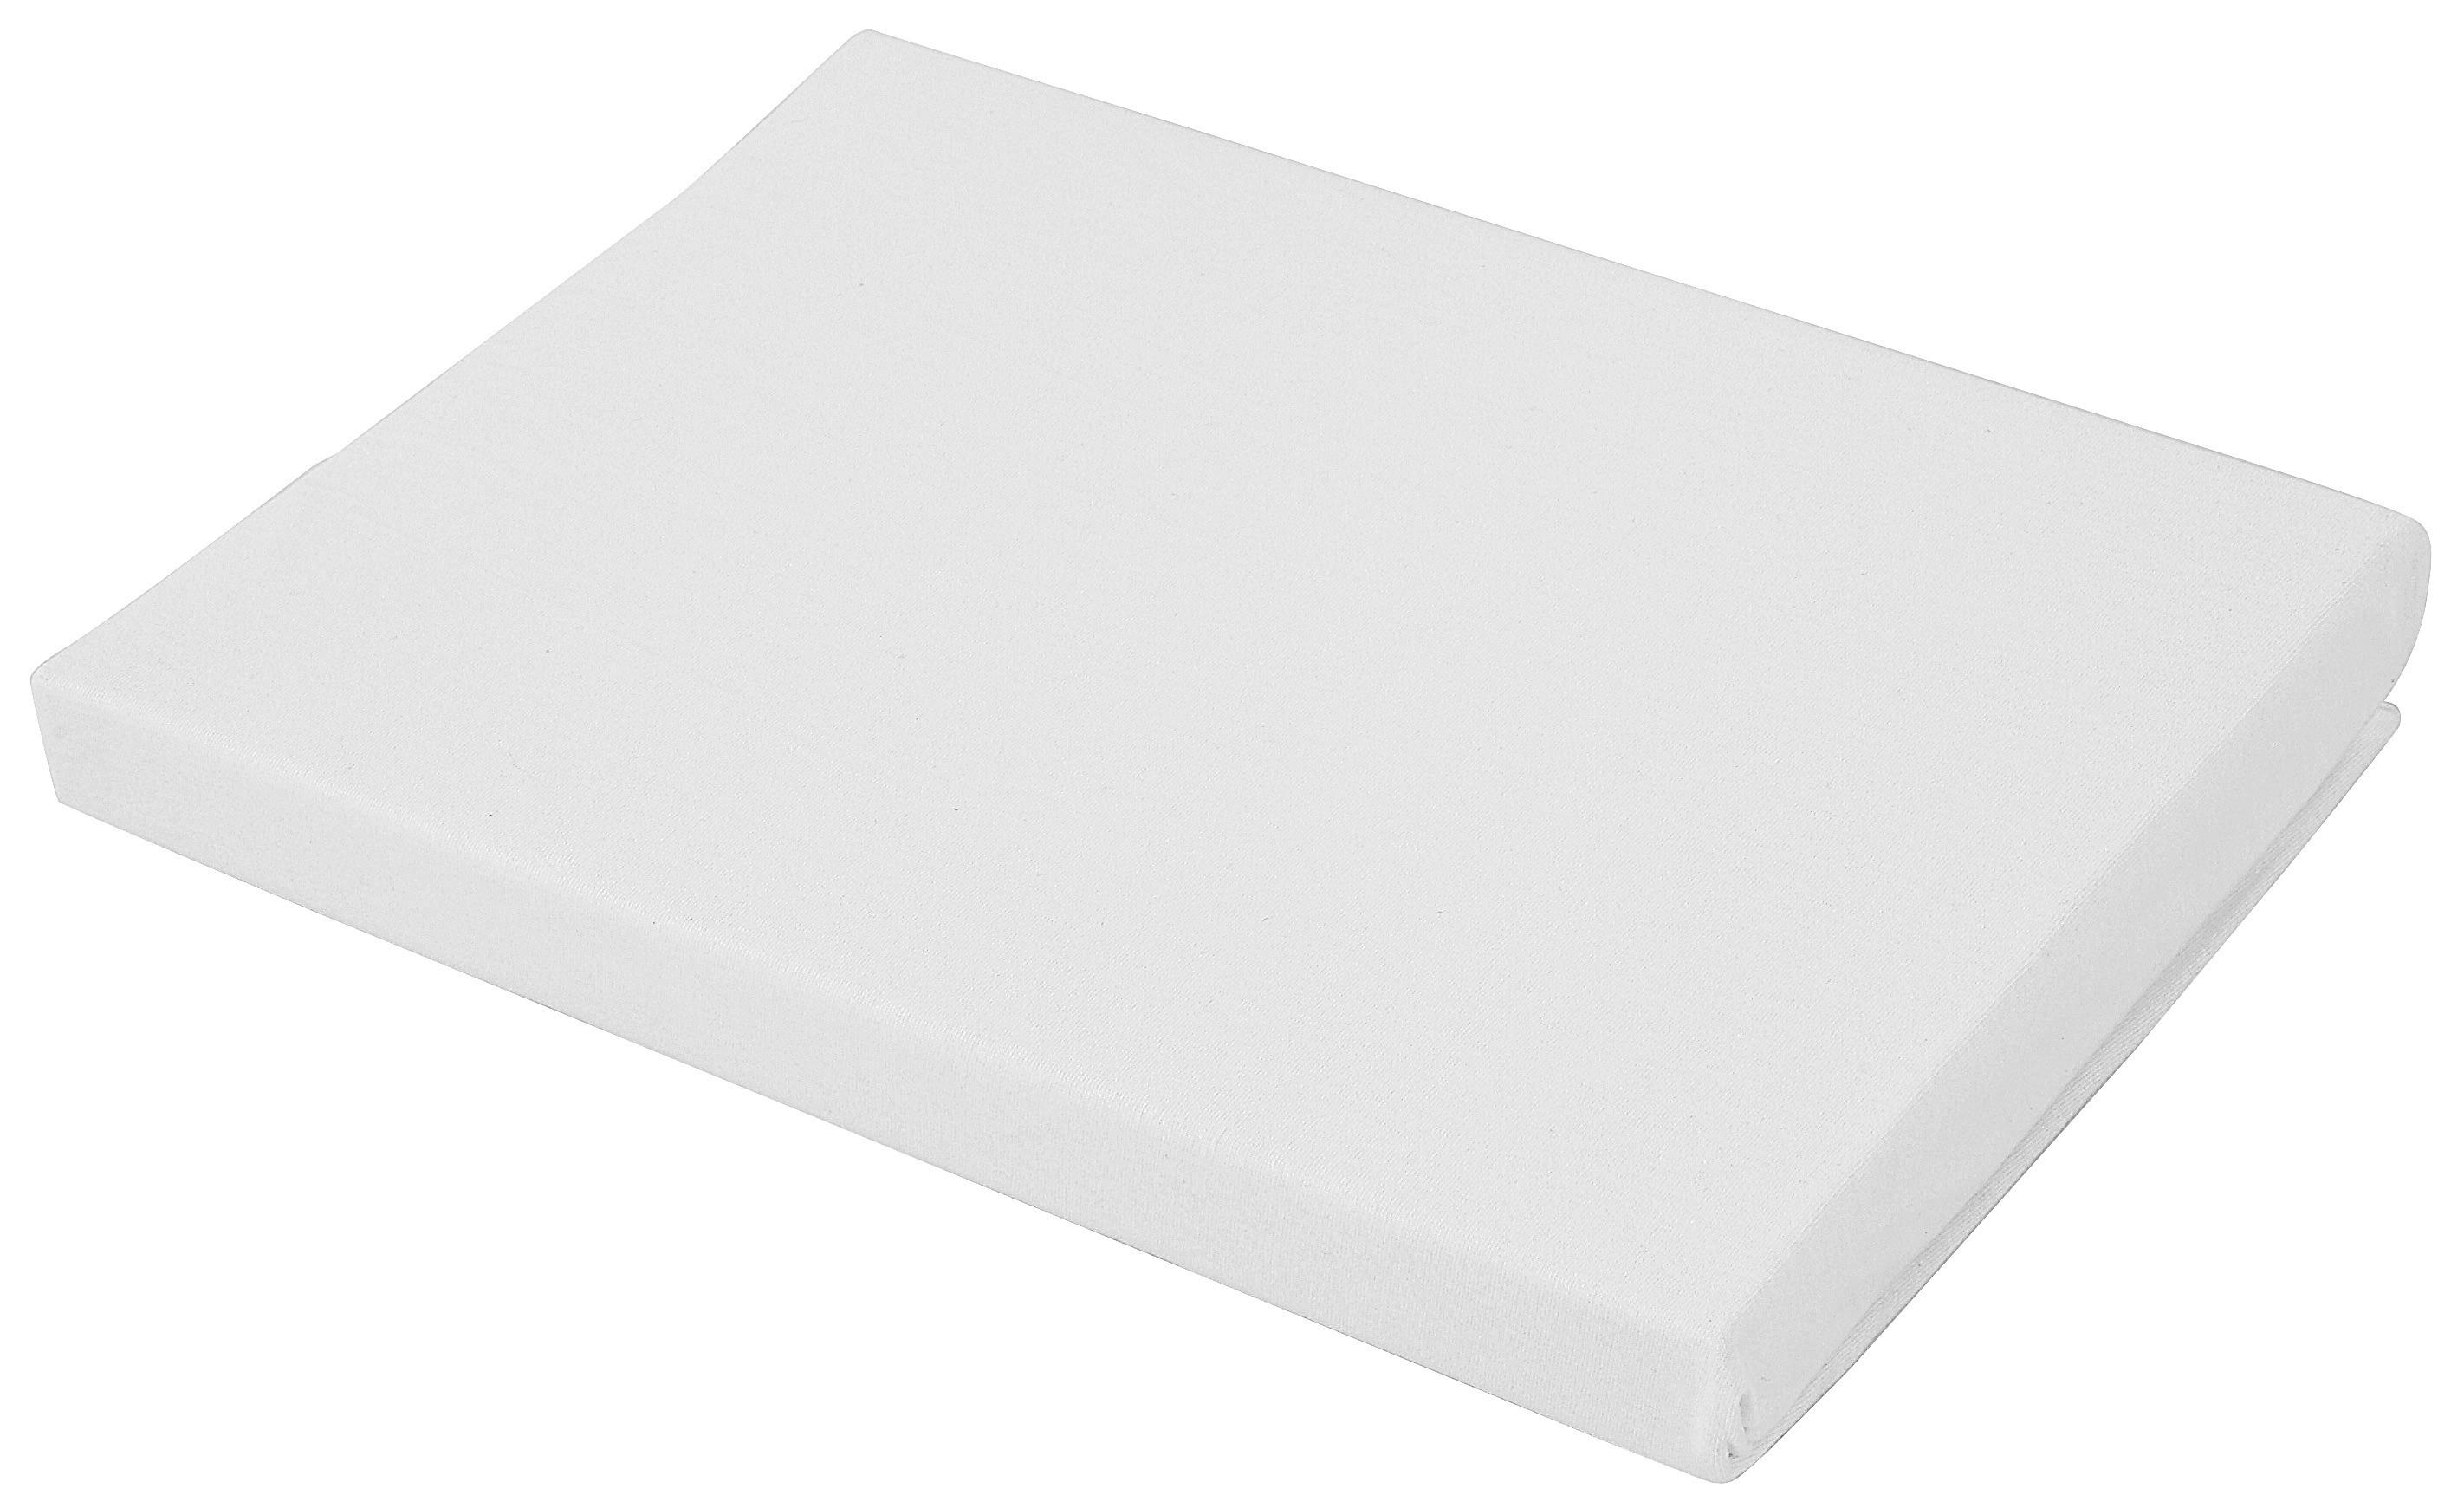 Elastické Prostěradlo Basic, 100/20cm, Bílá - bílá, textil (100/200cm) - Modern Living